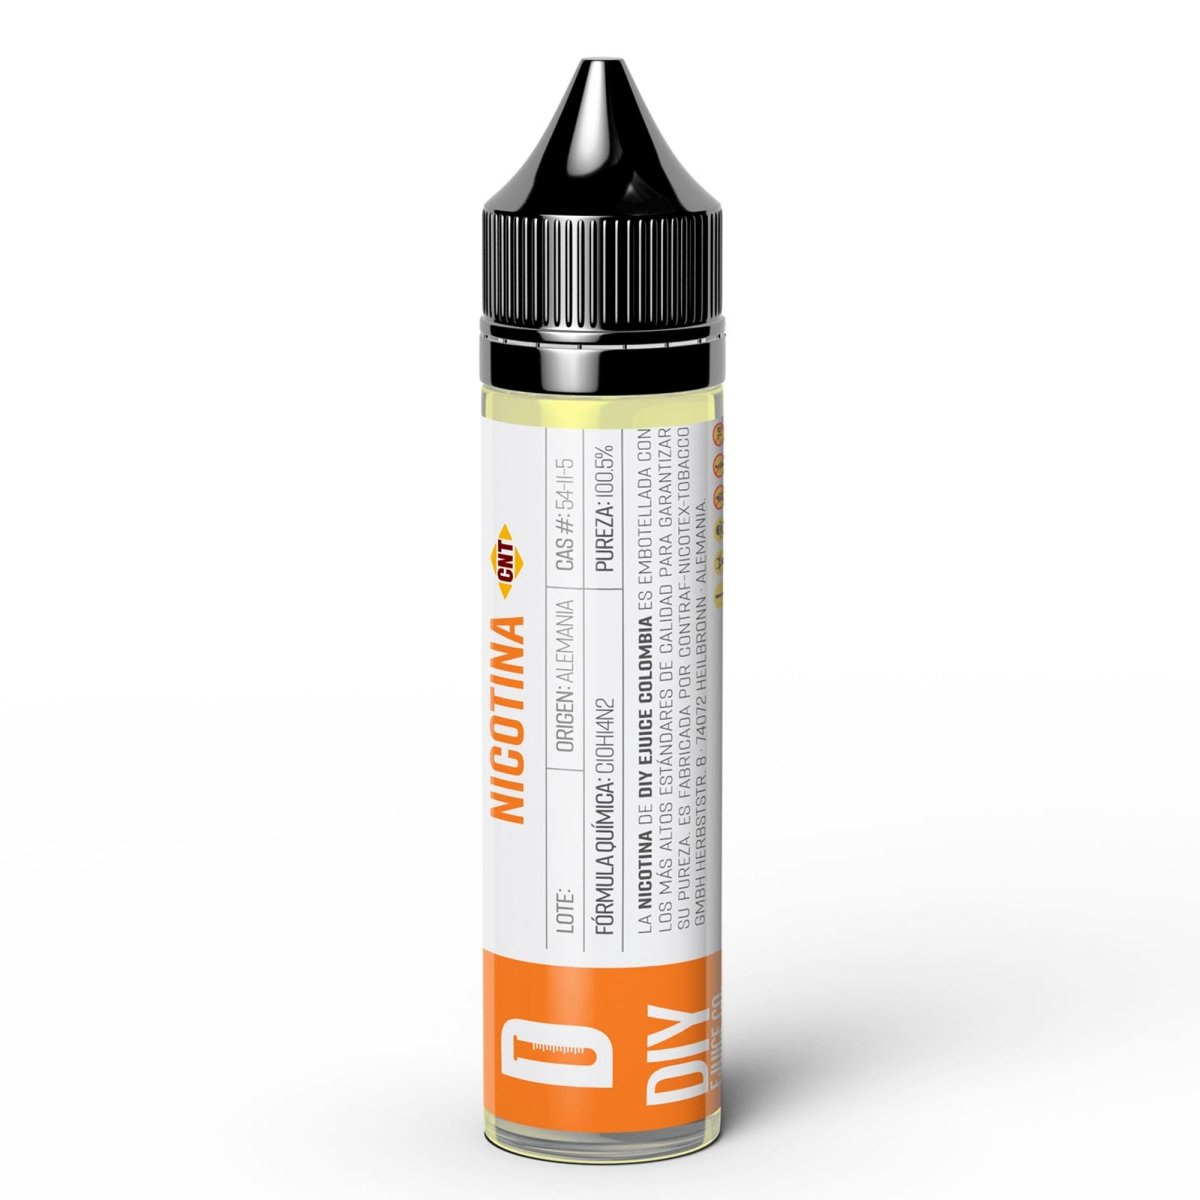 Nicotina CNT® - 100mg/ml PG - Nicotina de CNT en DIY Vape.